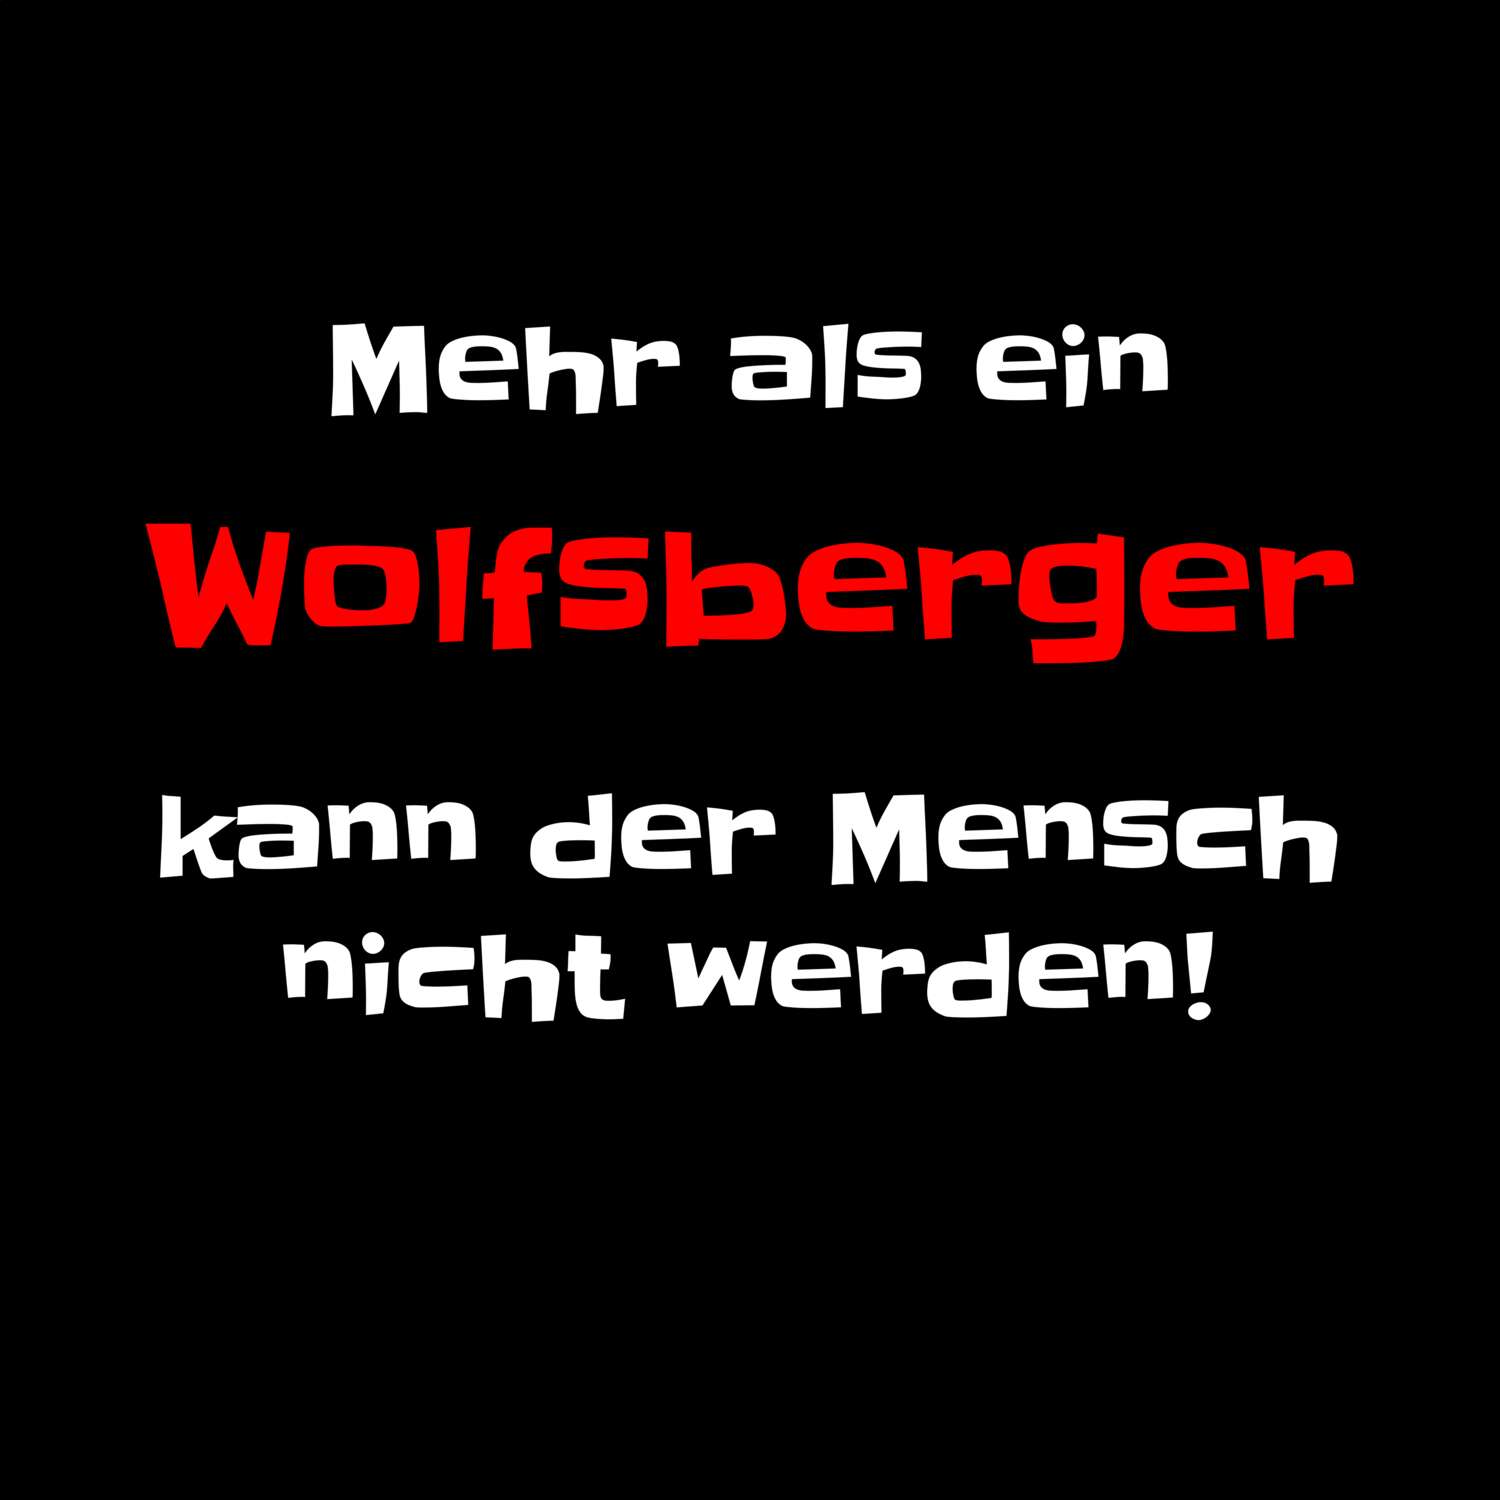 Wolfsberg T-Shirt »Mehr als ein«